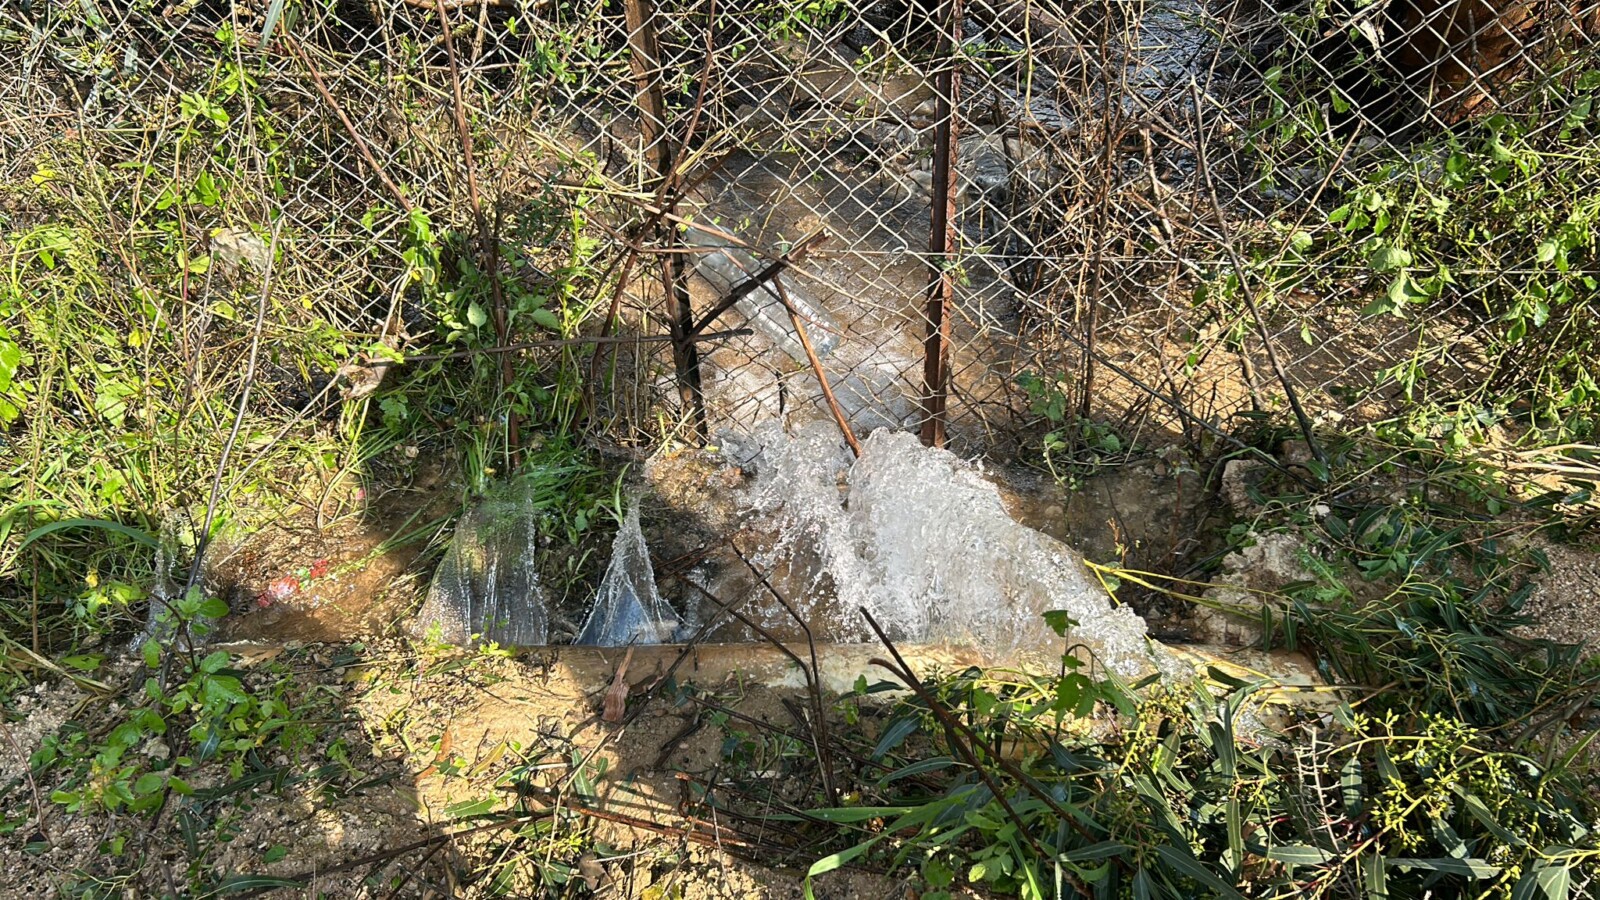 צינור ההשקיה שנפגע מרקטה בקיבוץ בגליל העליון (צילום: המועצה האזורית גליל עליון)